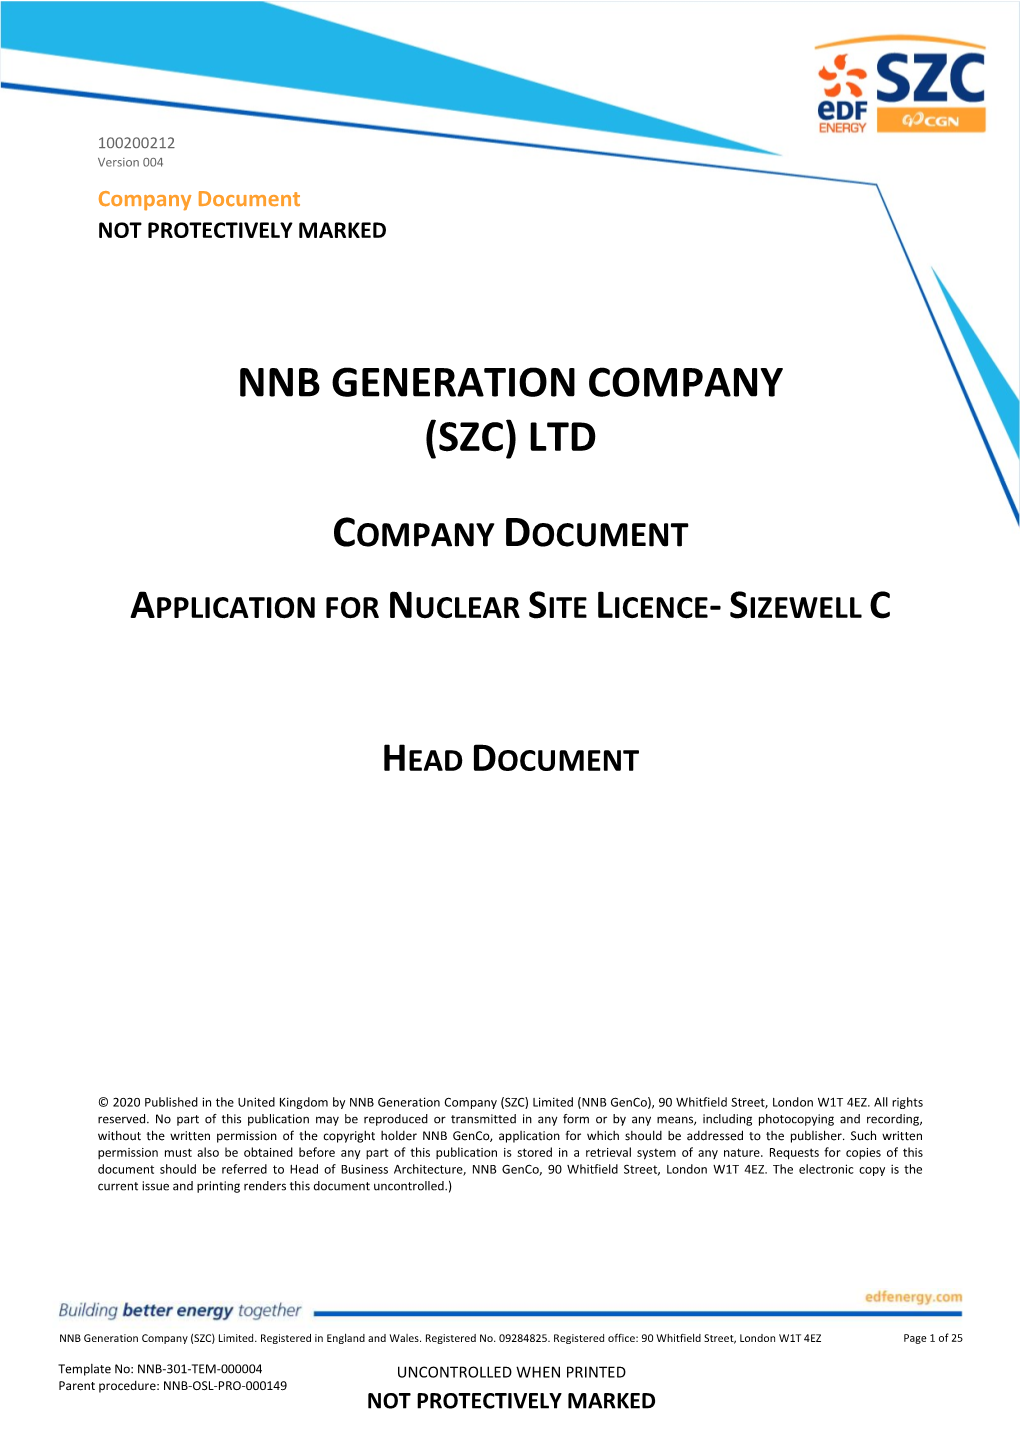 Nnb Generation Company (Szc) Ltd